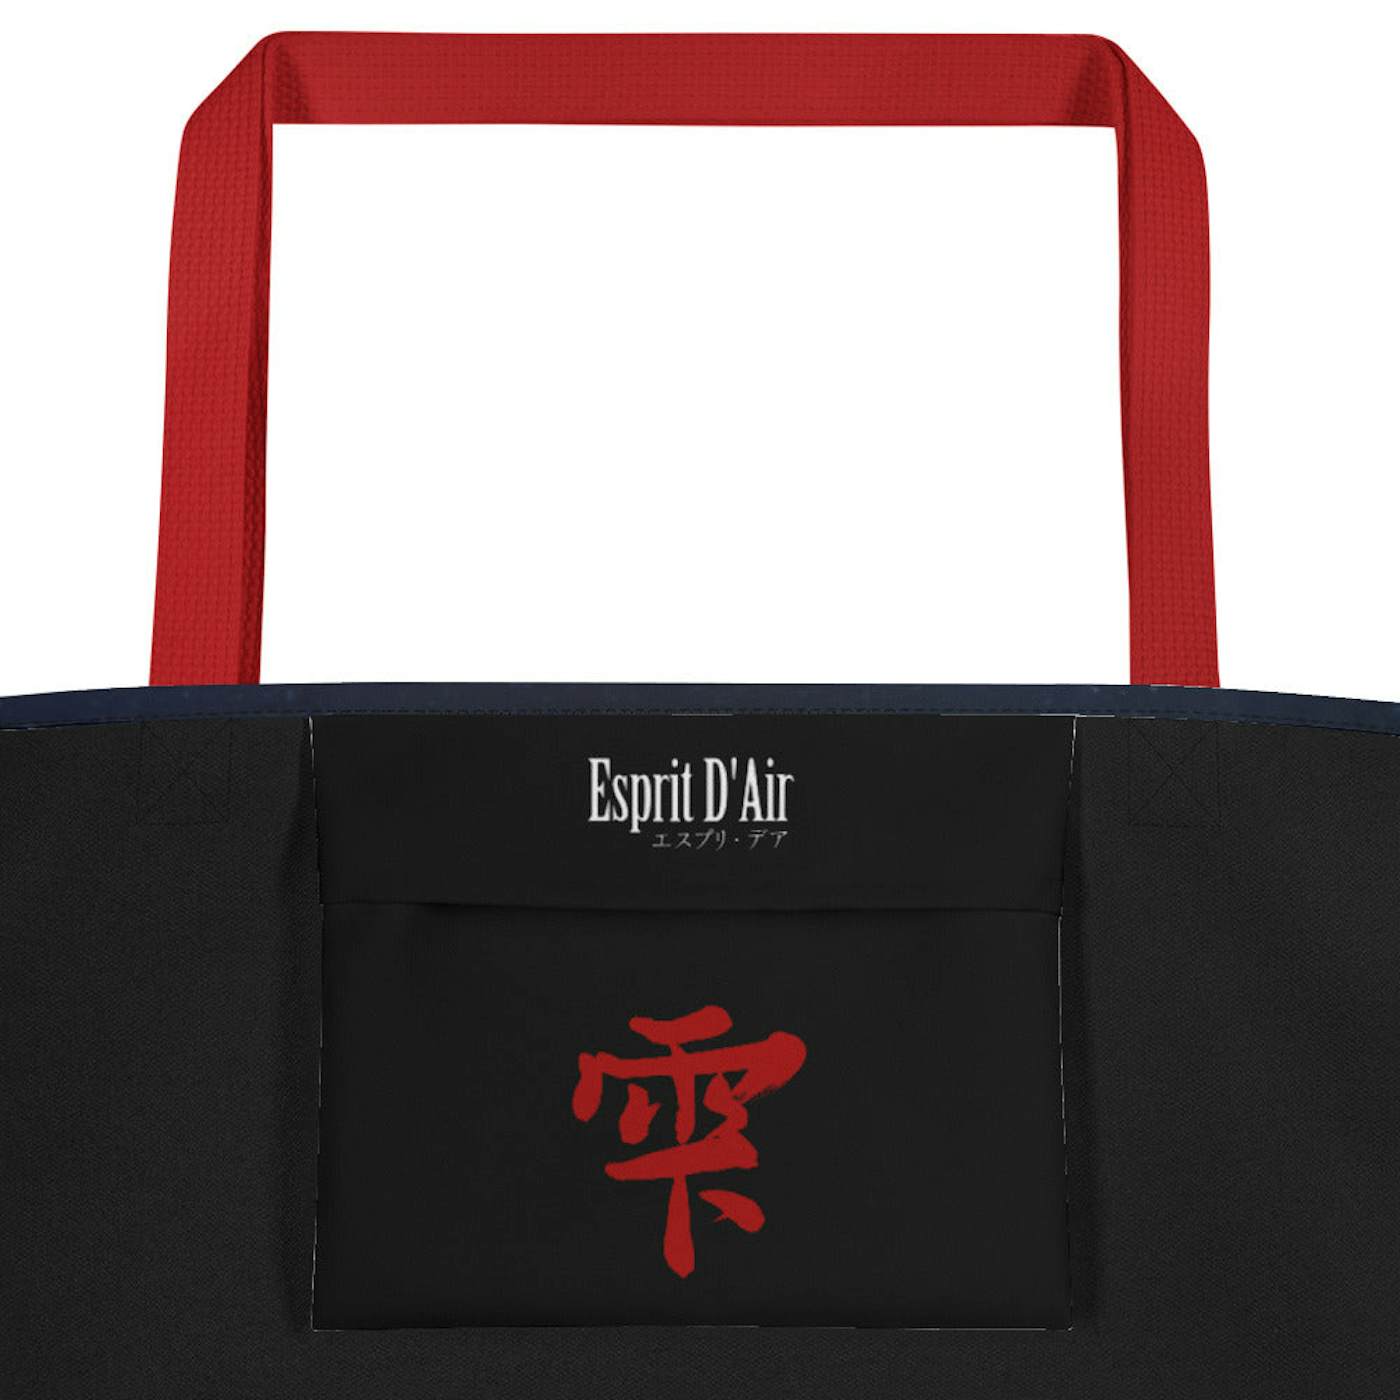 Esprit D'Air 雫 ('Shizuku') Large Tote Bag